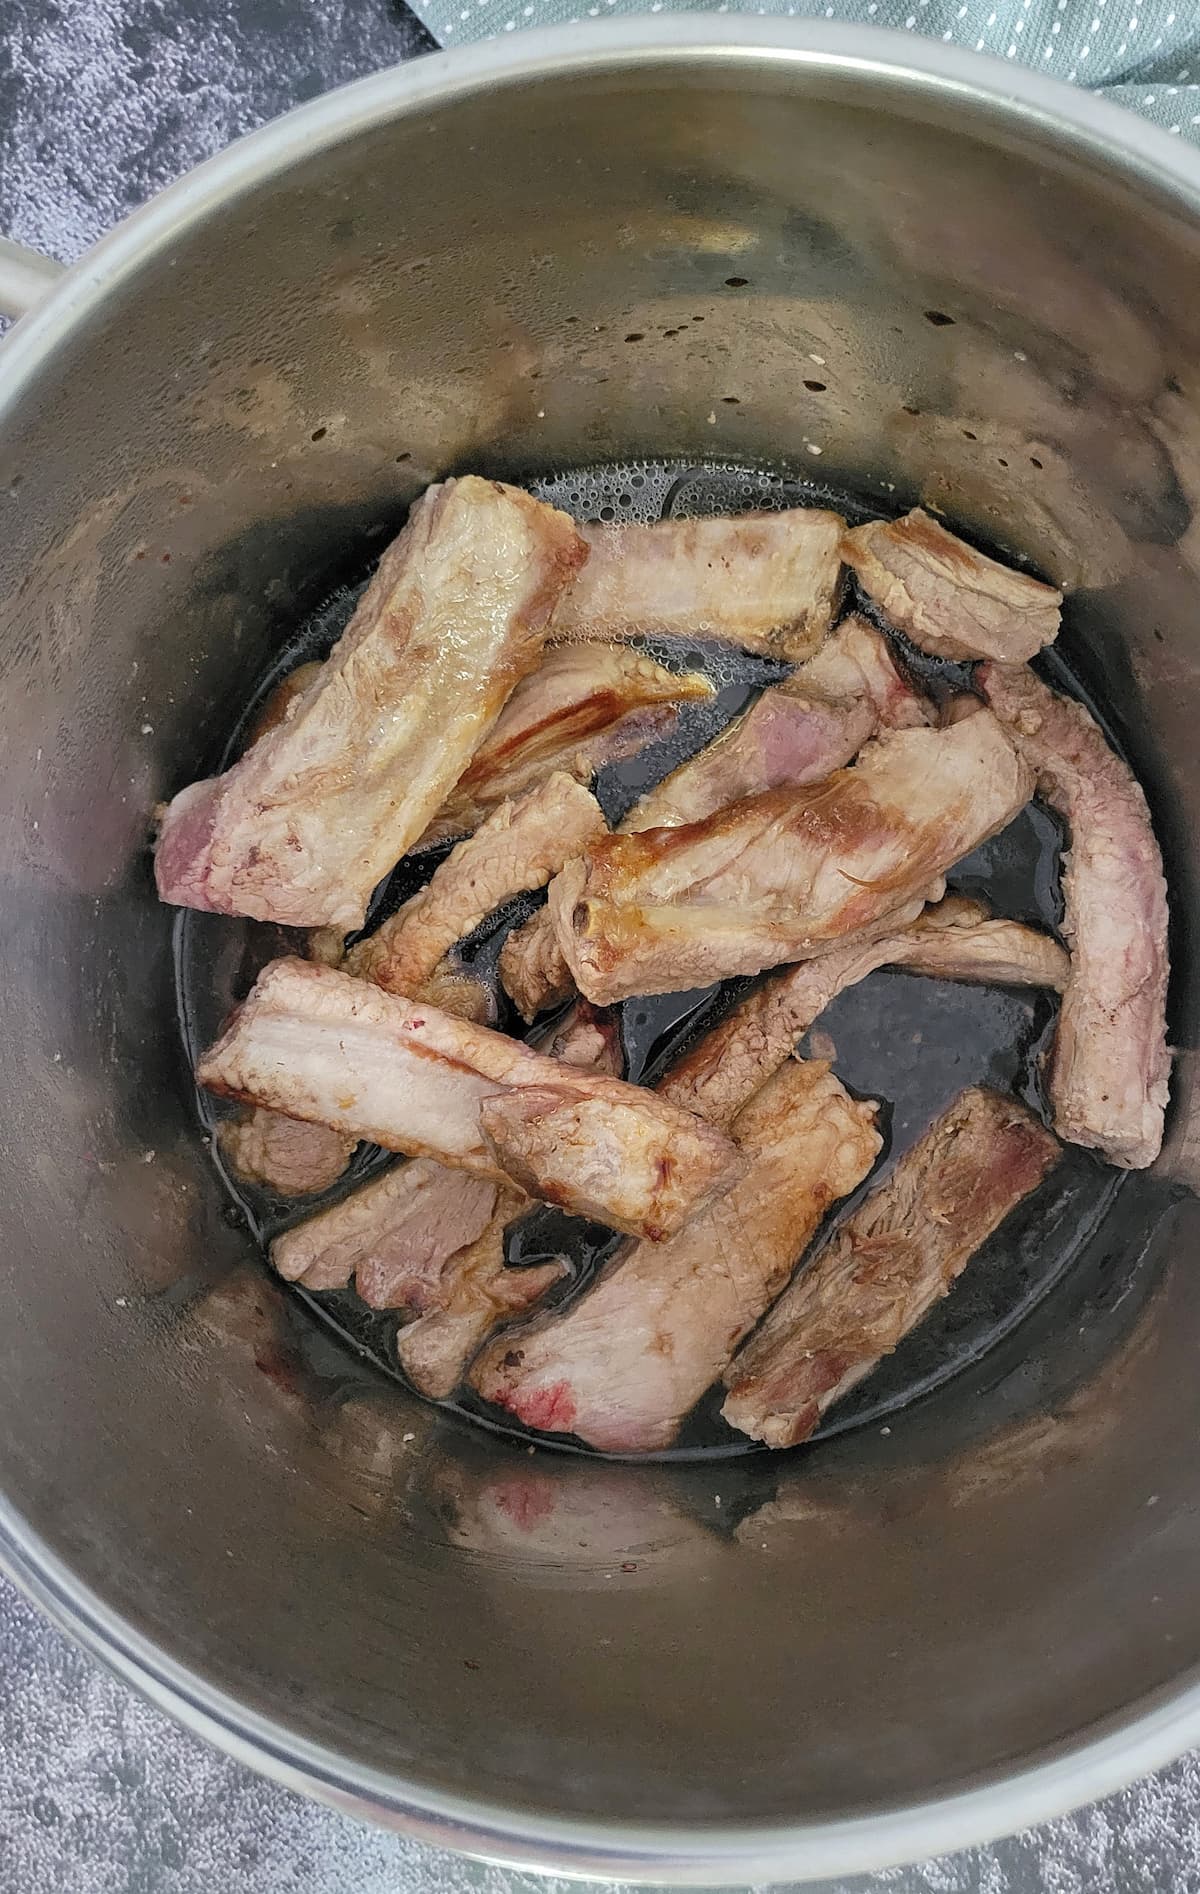 single ribs in a dark sauce in a pot